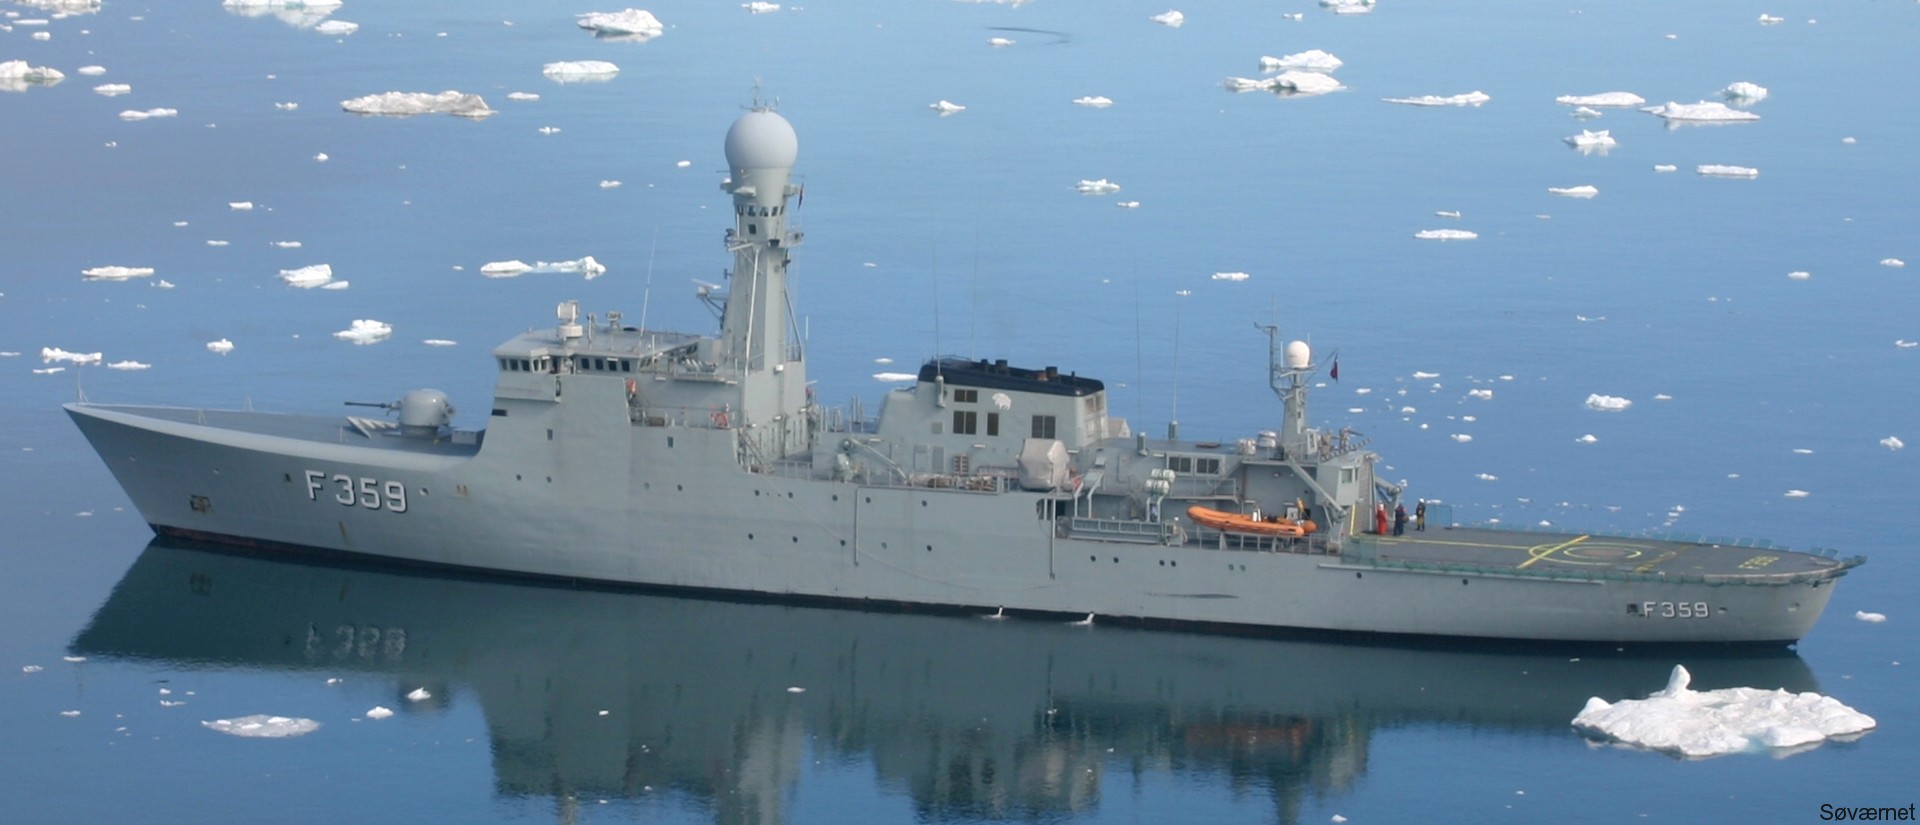 f-359 hdms vaedderen thetis class ocean patrol frigate royal danish navy kongelige danske marine kdm inspektionsskibet 25